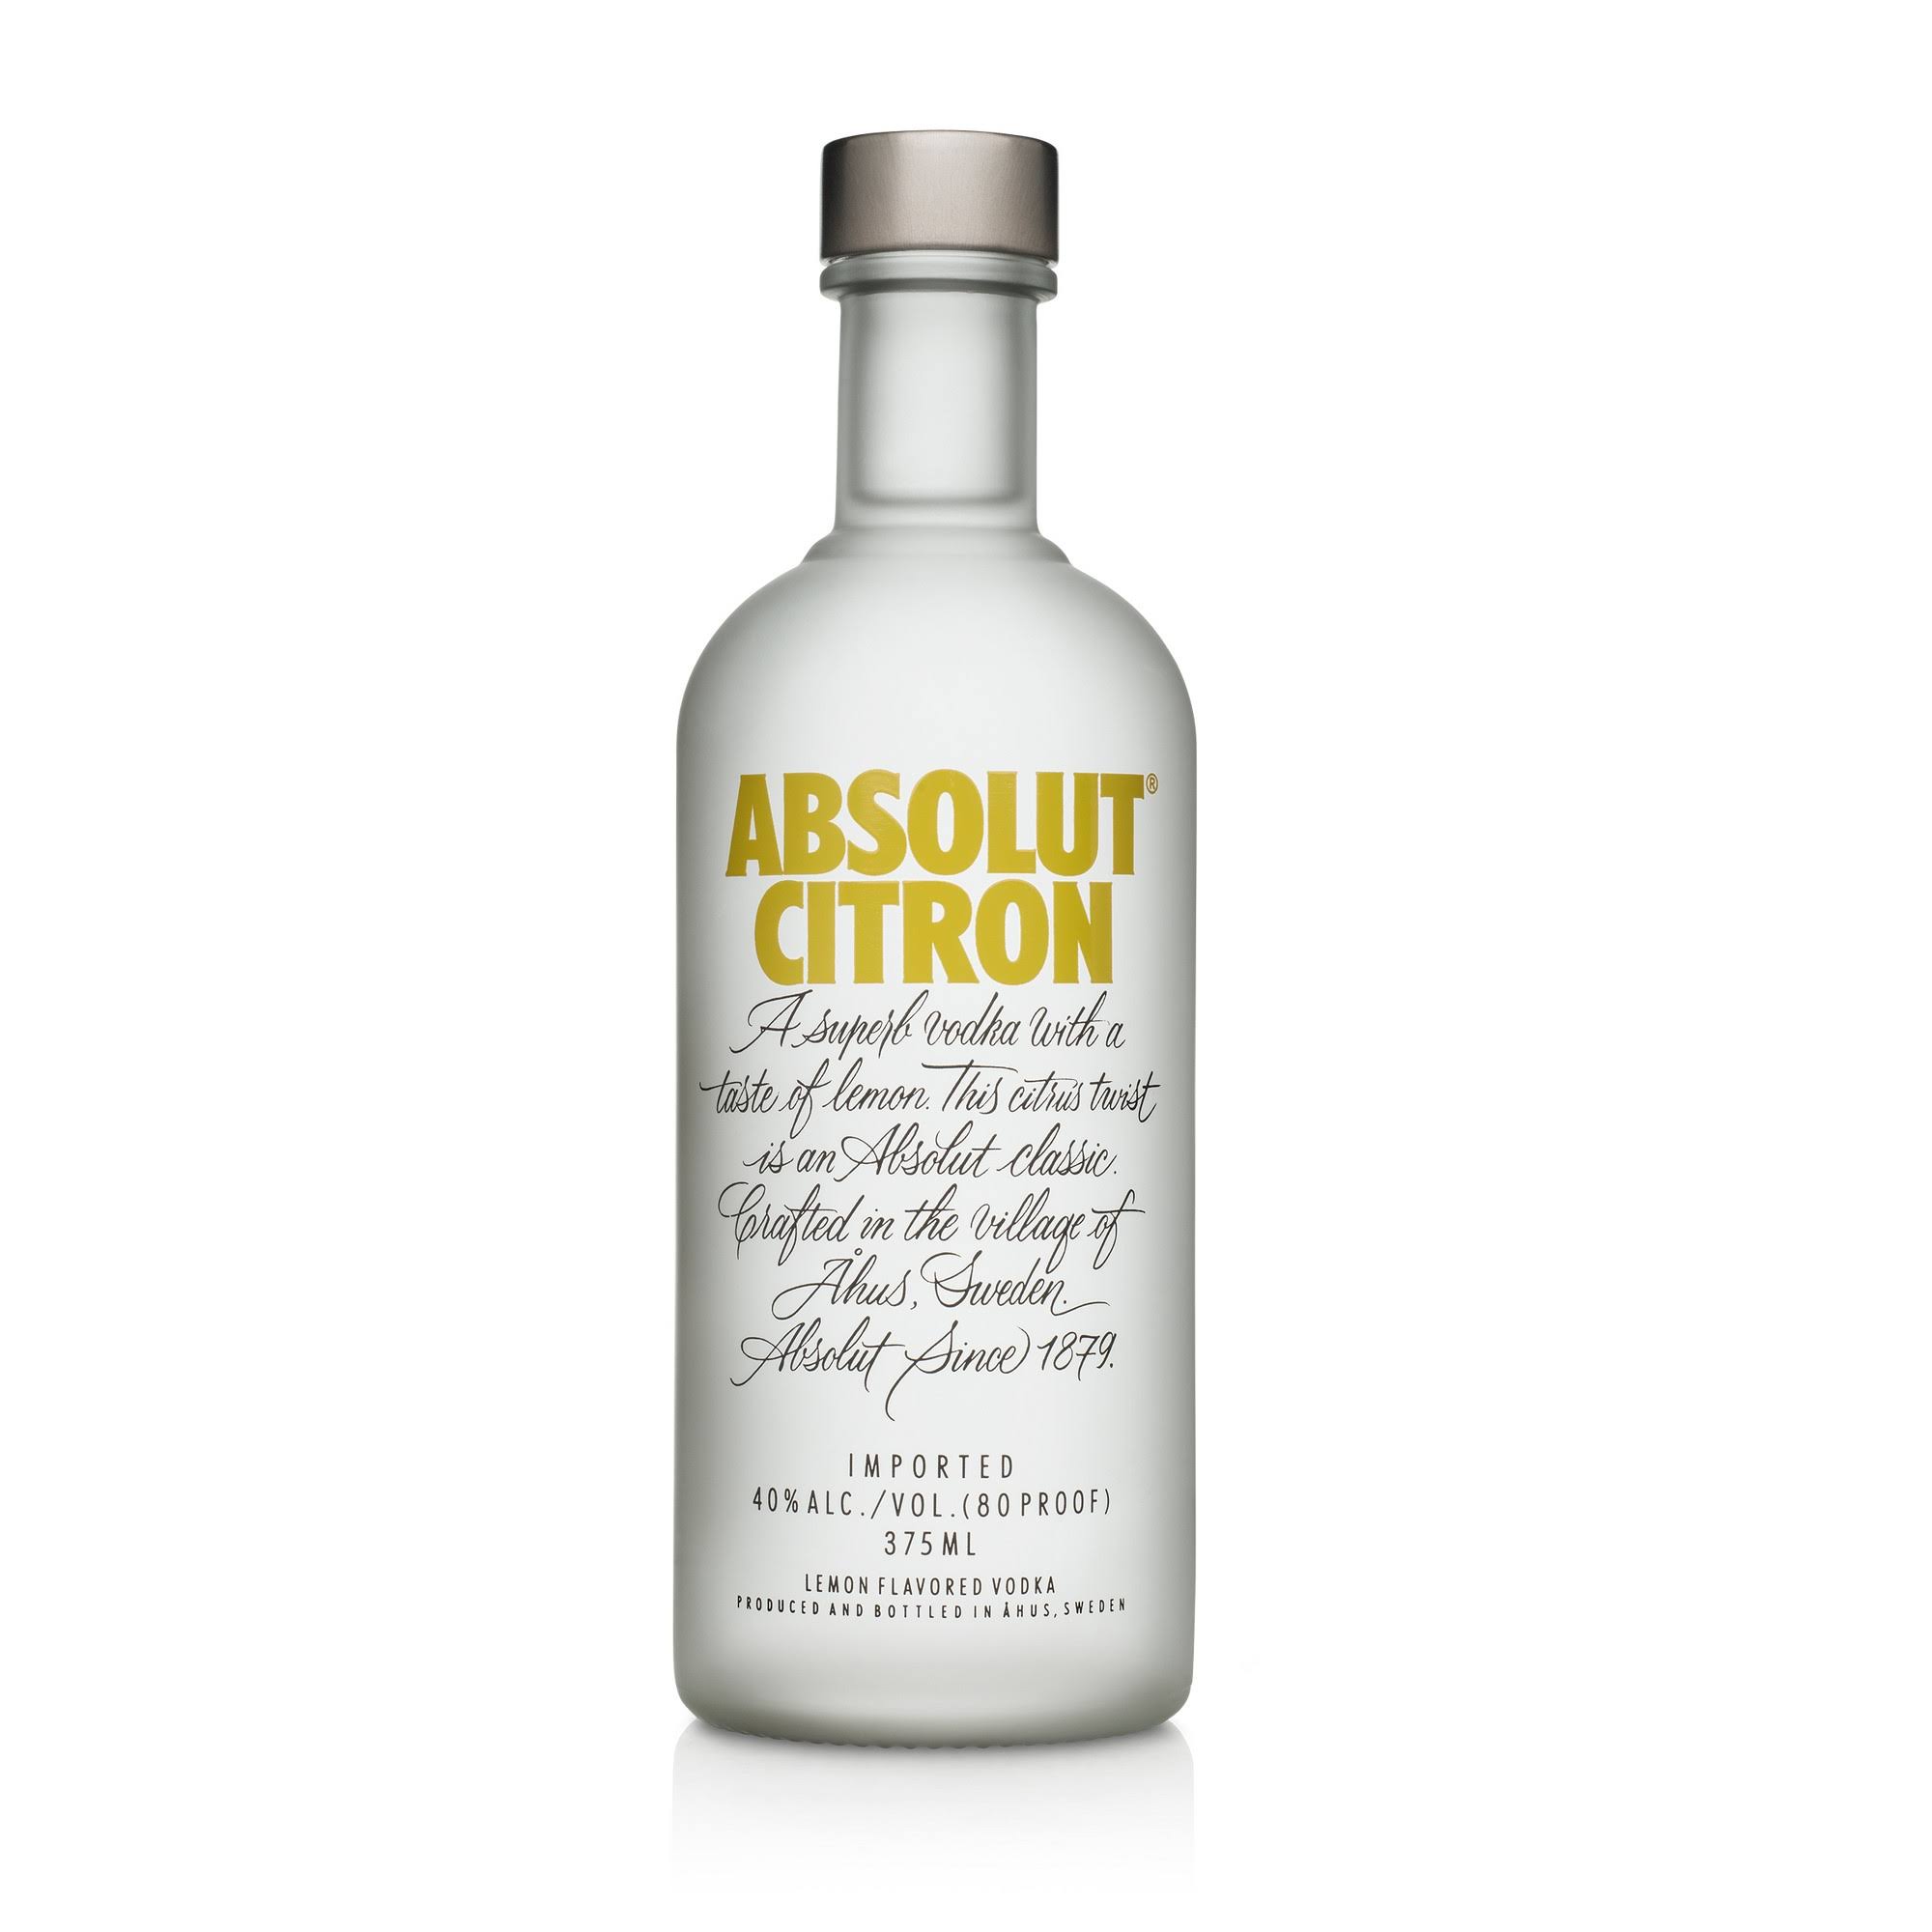 Absolut Citron Vodka - 375 ml bottle